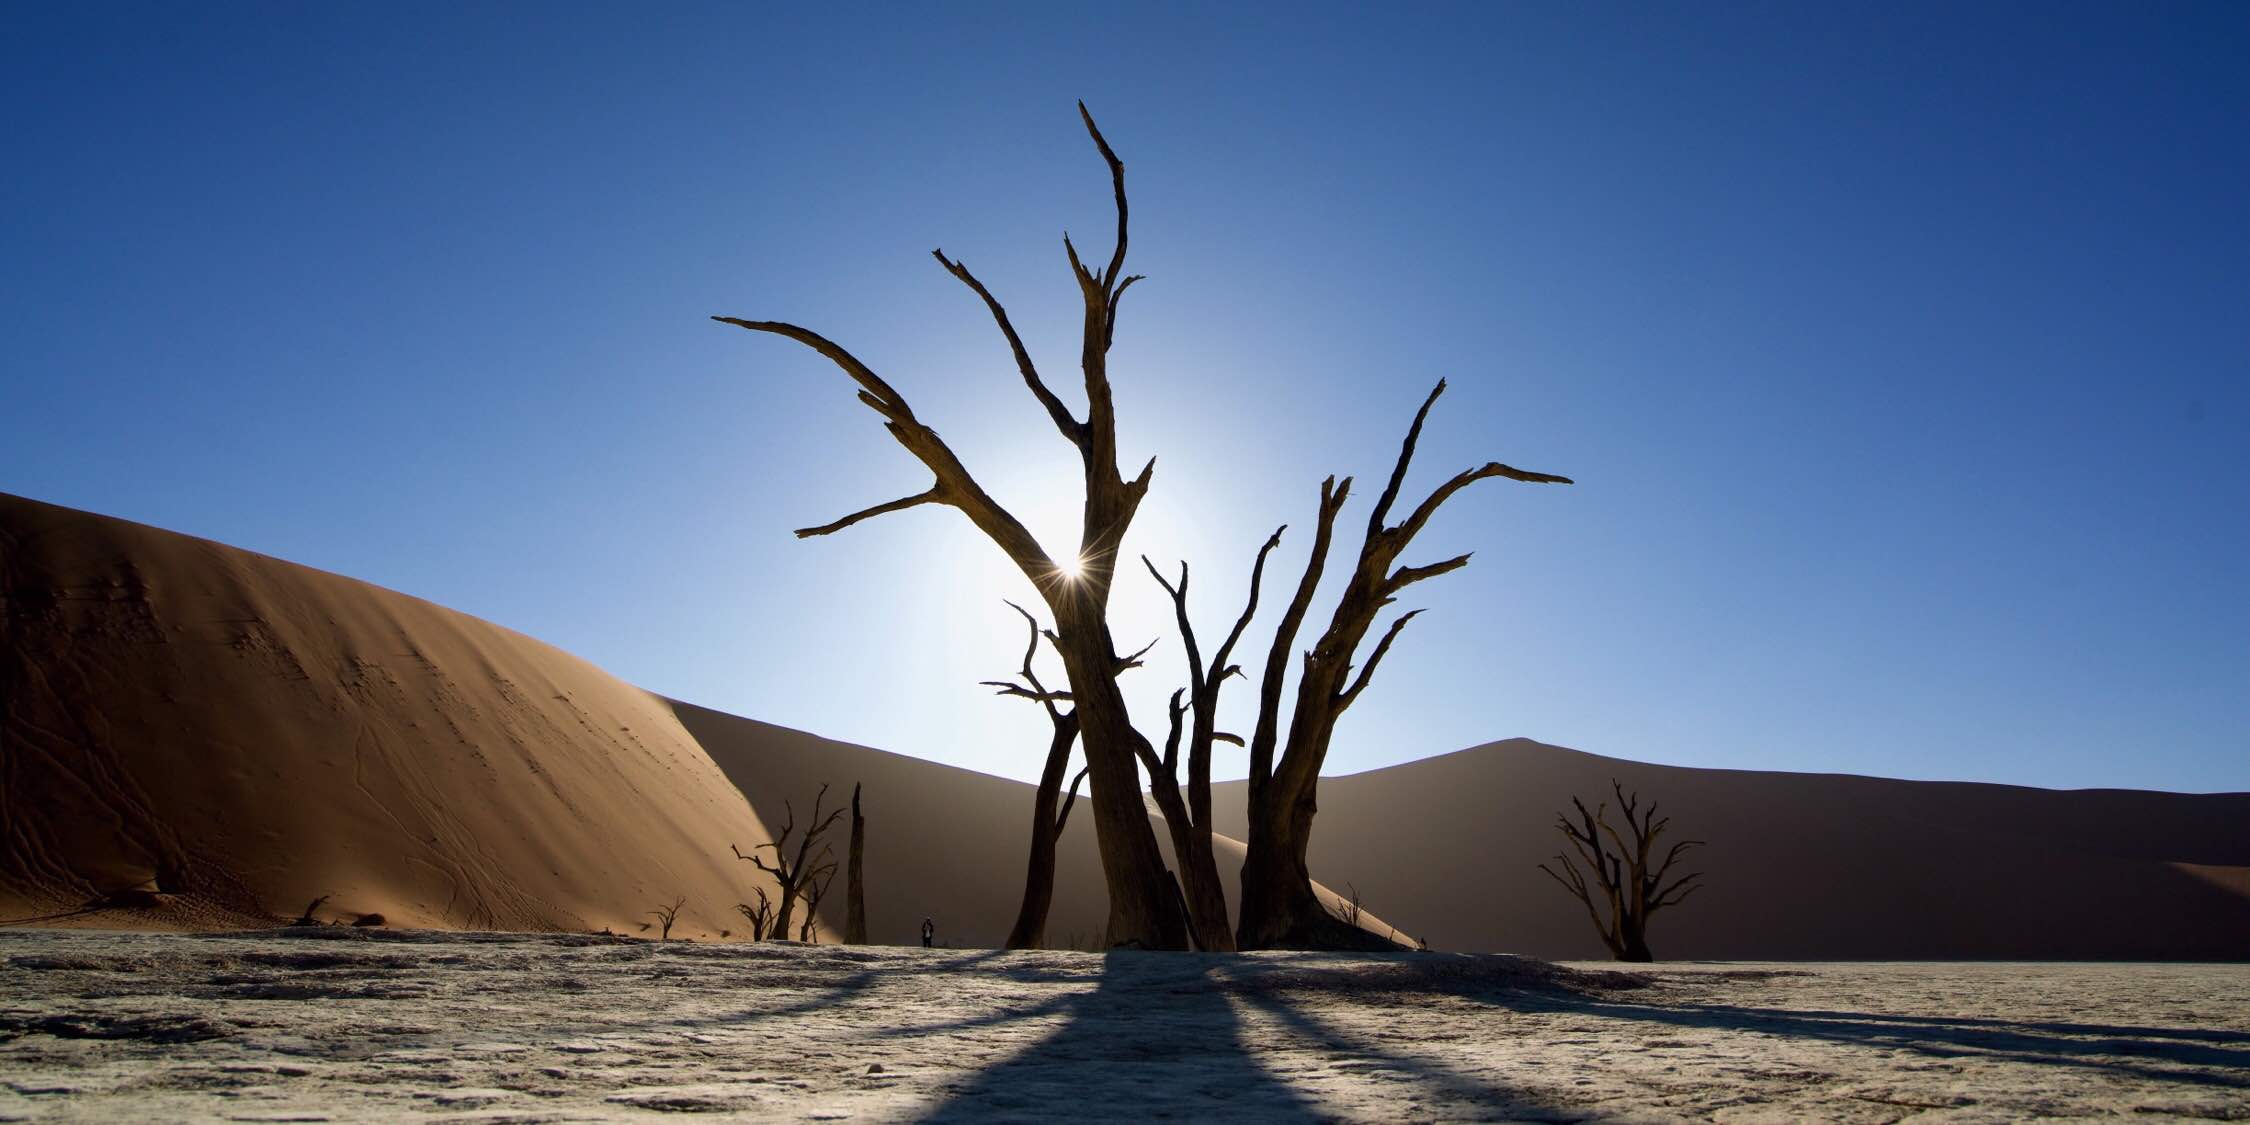 世界最古の砂漠 ナミブ砂漠で見た圧巻の景色 世界見聞録